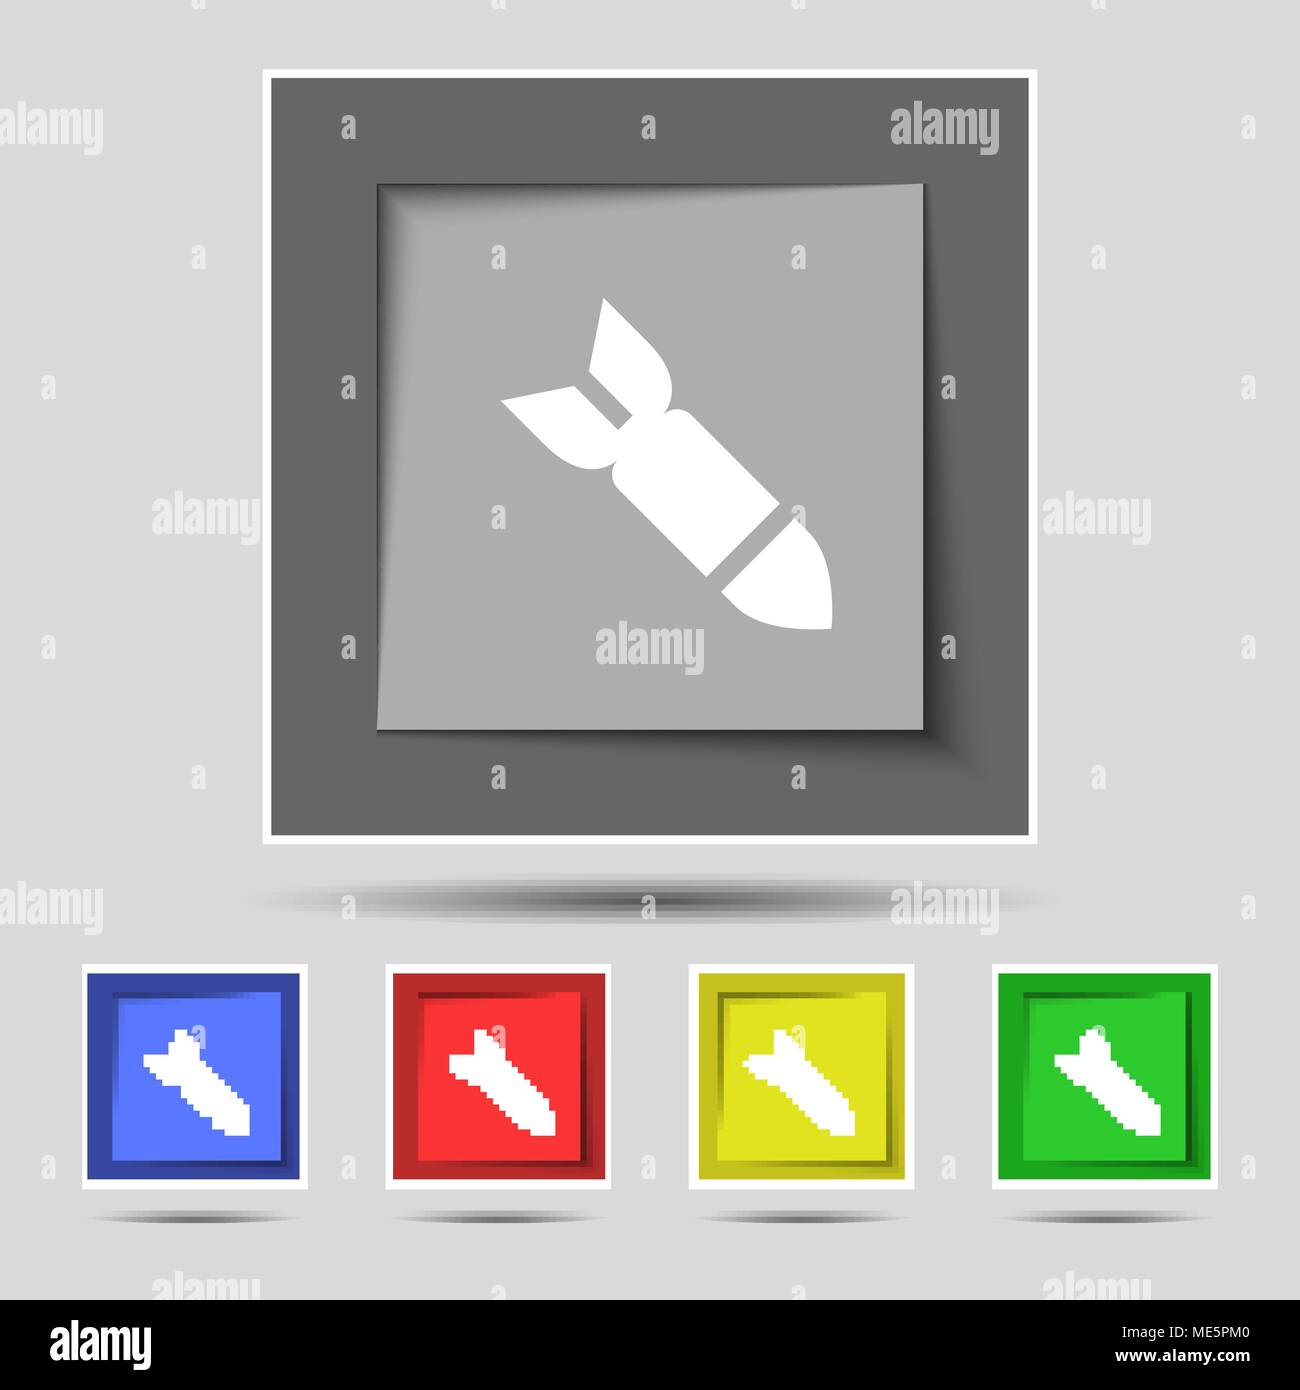 Rakete Rakete Waffensymbol auf die ursprünglichen fünf farbigen Tasten. Vector Illustration Stock Vektor